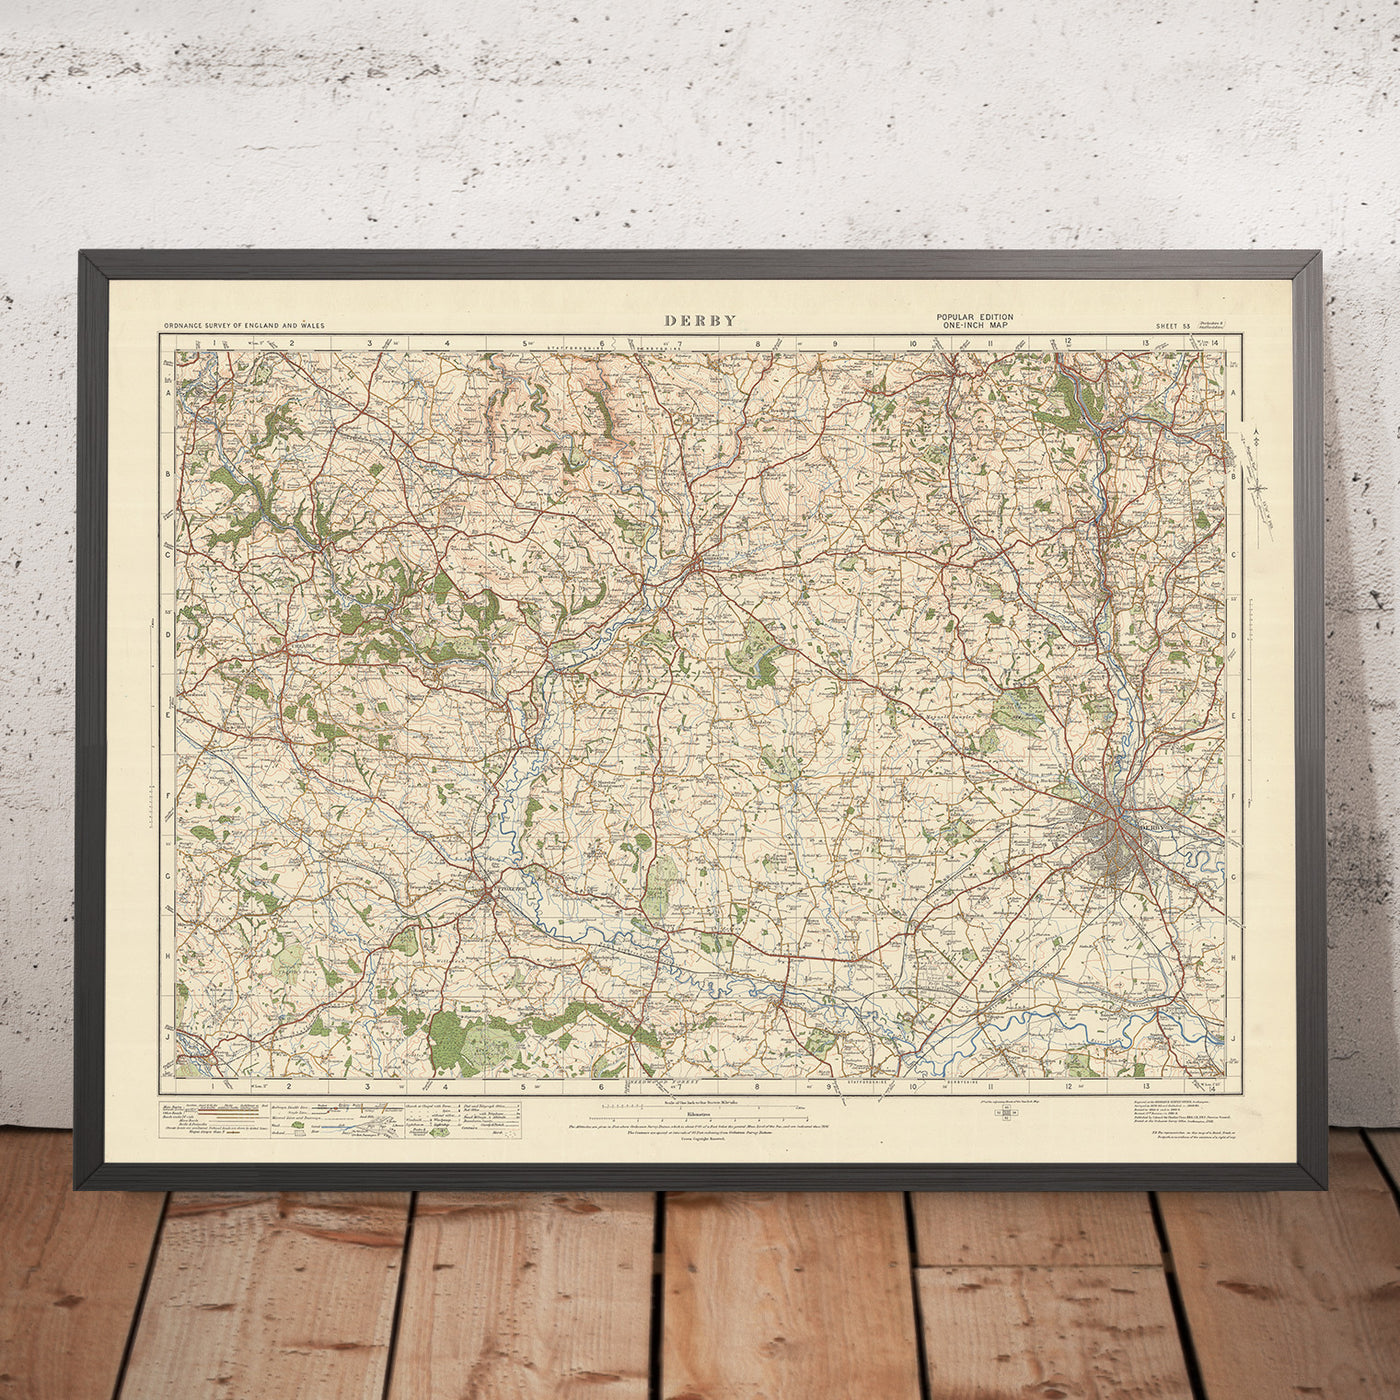 Old Ordnance Survey Map, Blatt 53 – Derby, 1925: Uttoxeter, Belper, Ripley, Ashbourne, Cheadle